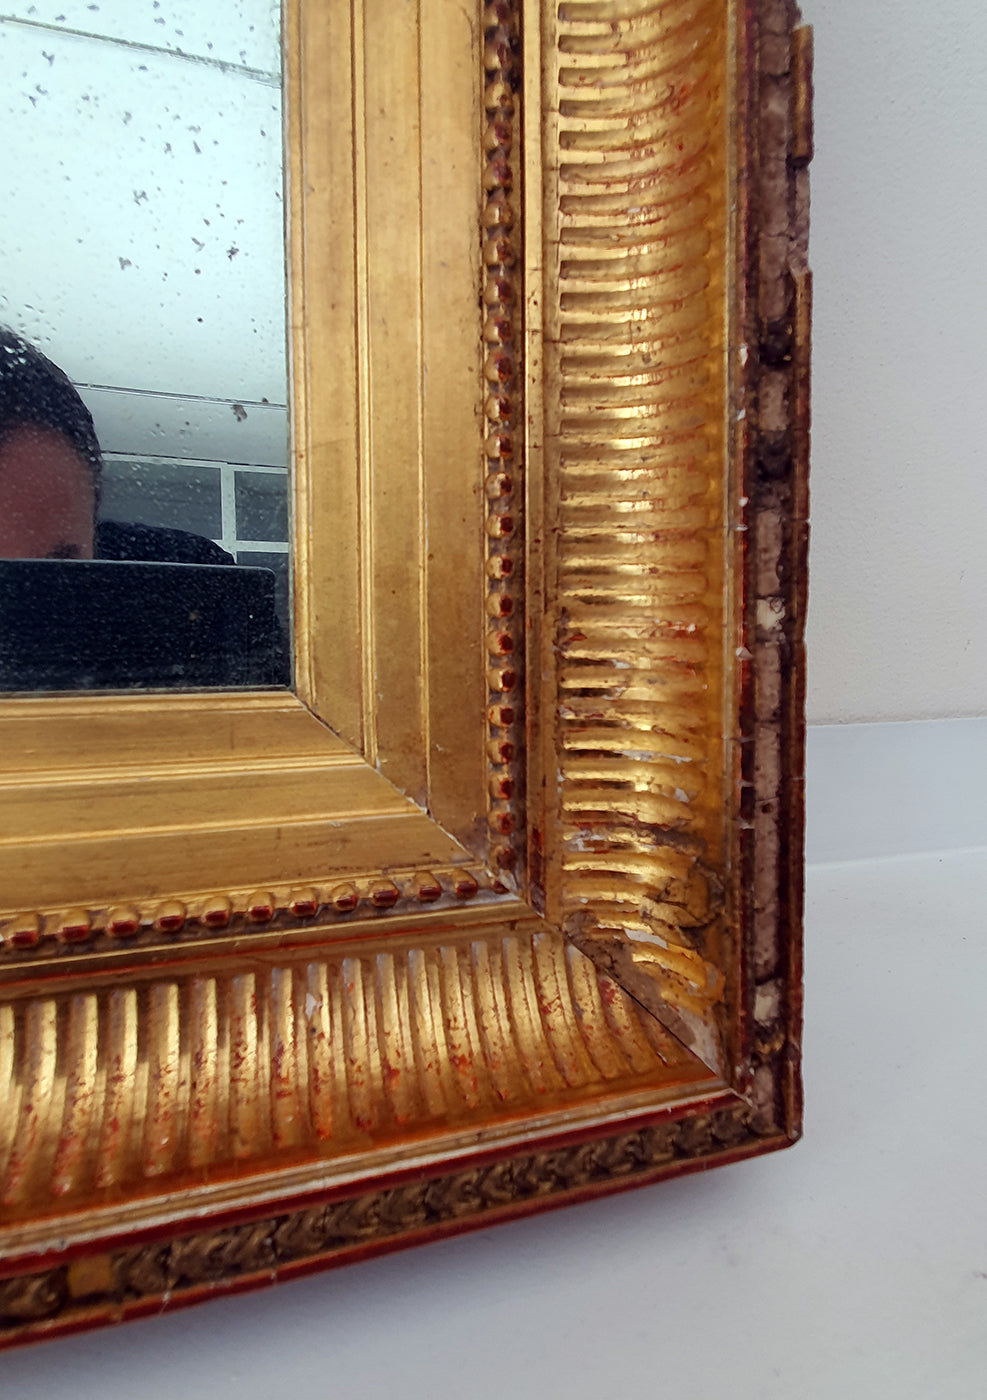 Specchio Antico a mercurio con cornice dorata | seconda metà '800